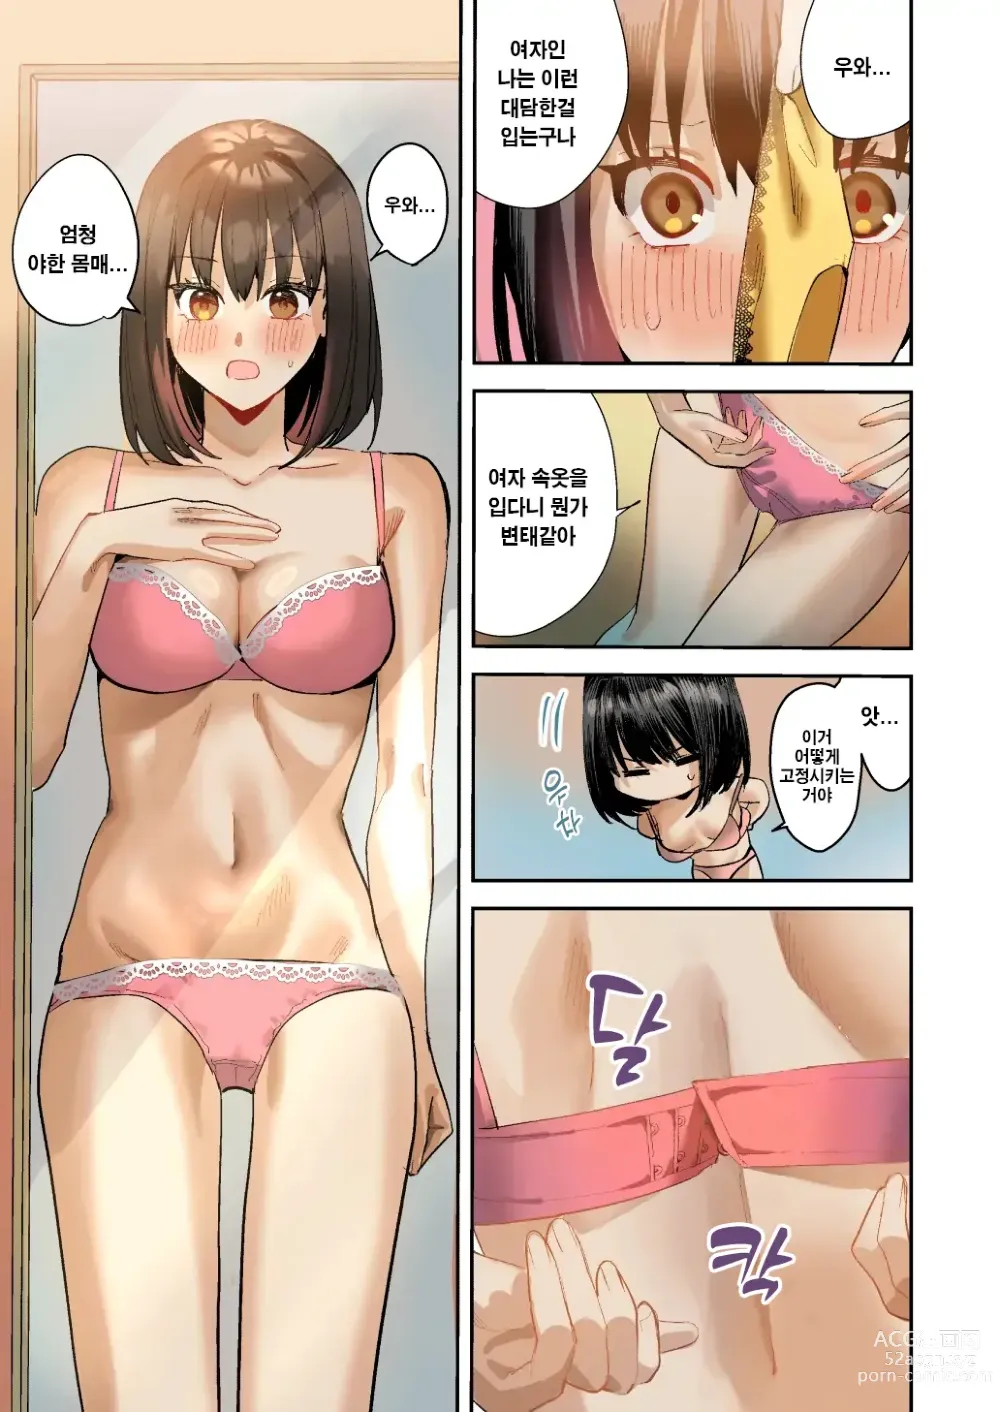 Page 12 of doujinshi 나는 거울의 나라에서 여자로 바뀐다 ~성별 반전 세계에서 여자의 쾌감을 탐하는 이야기~